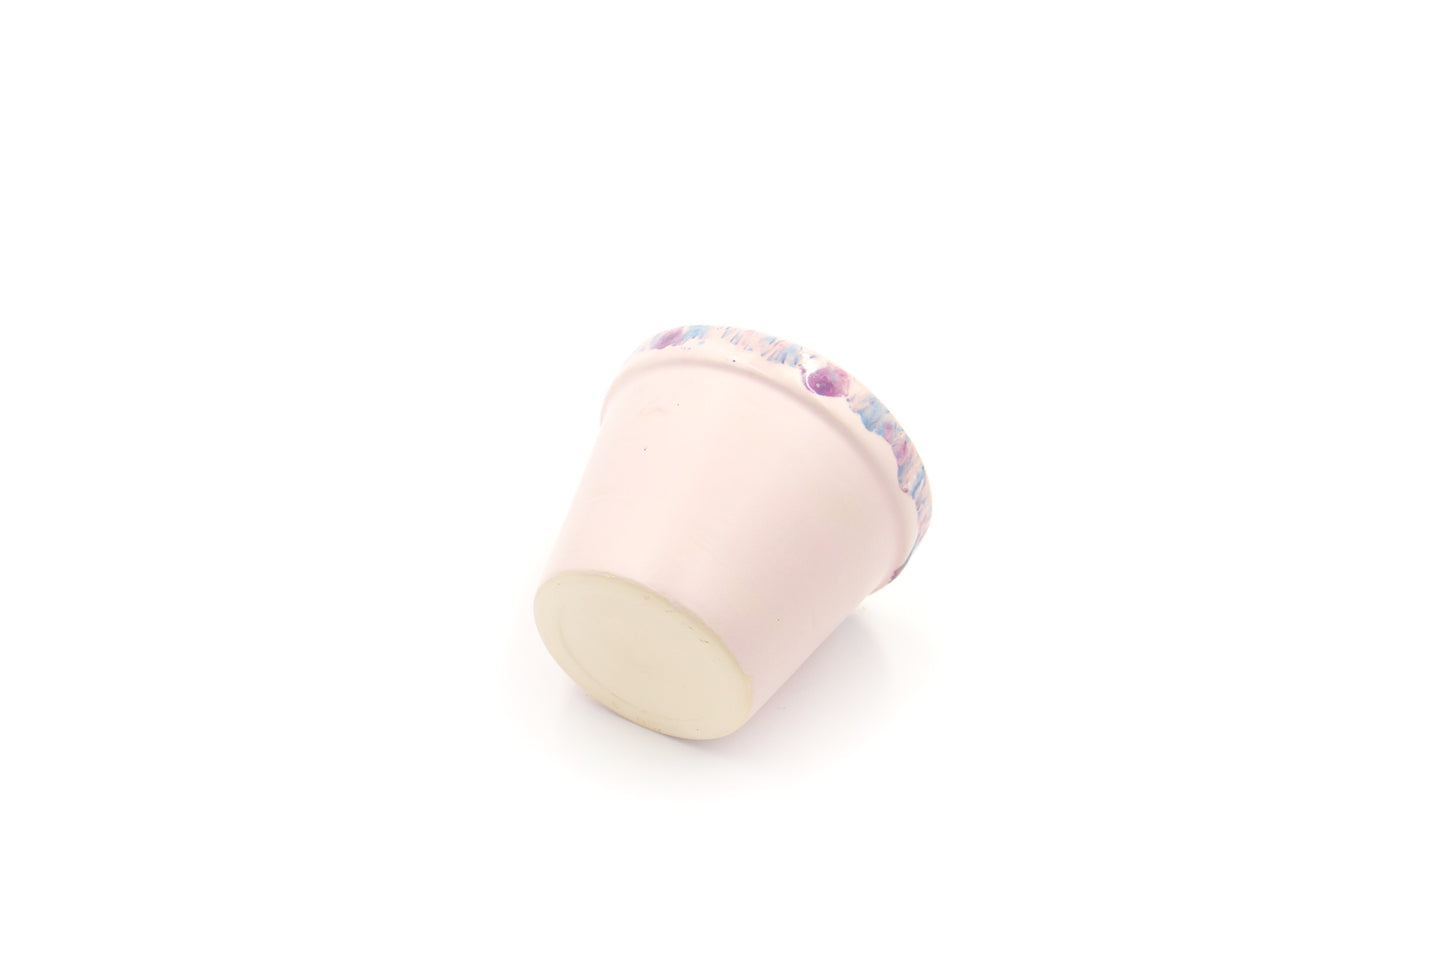 Mała osłonka ceramiczna w kolorze różowym